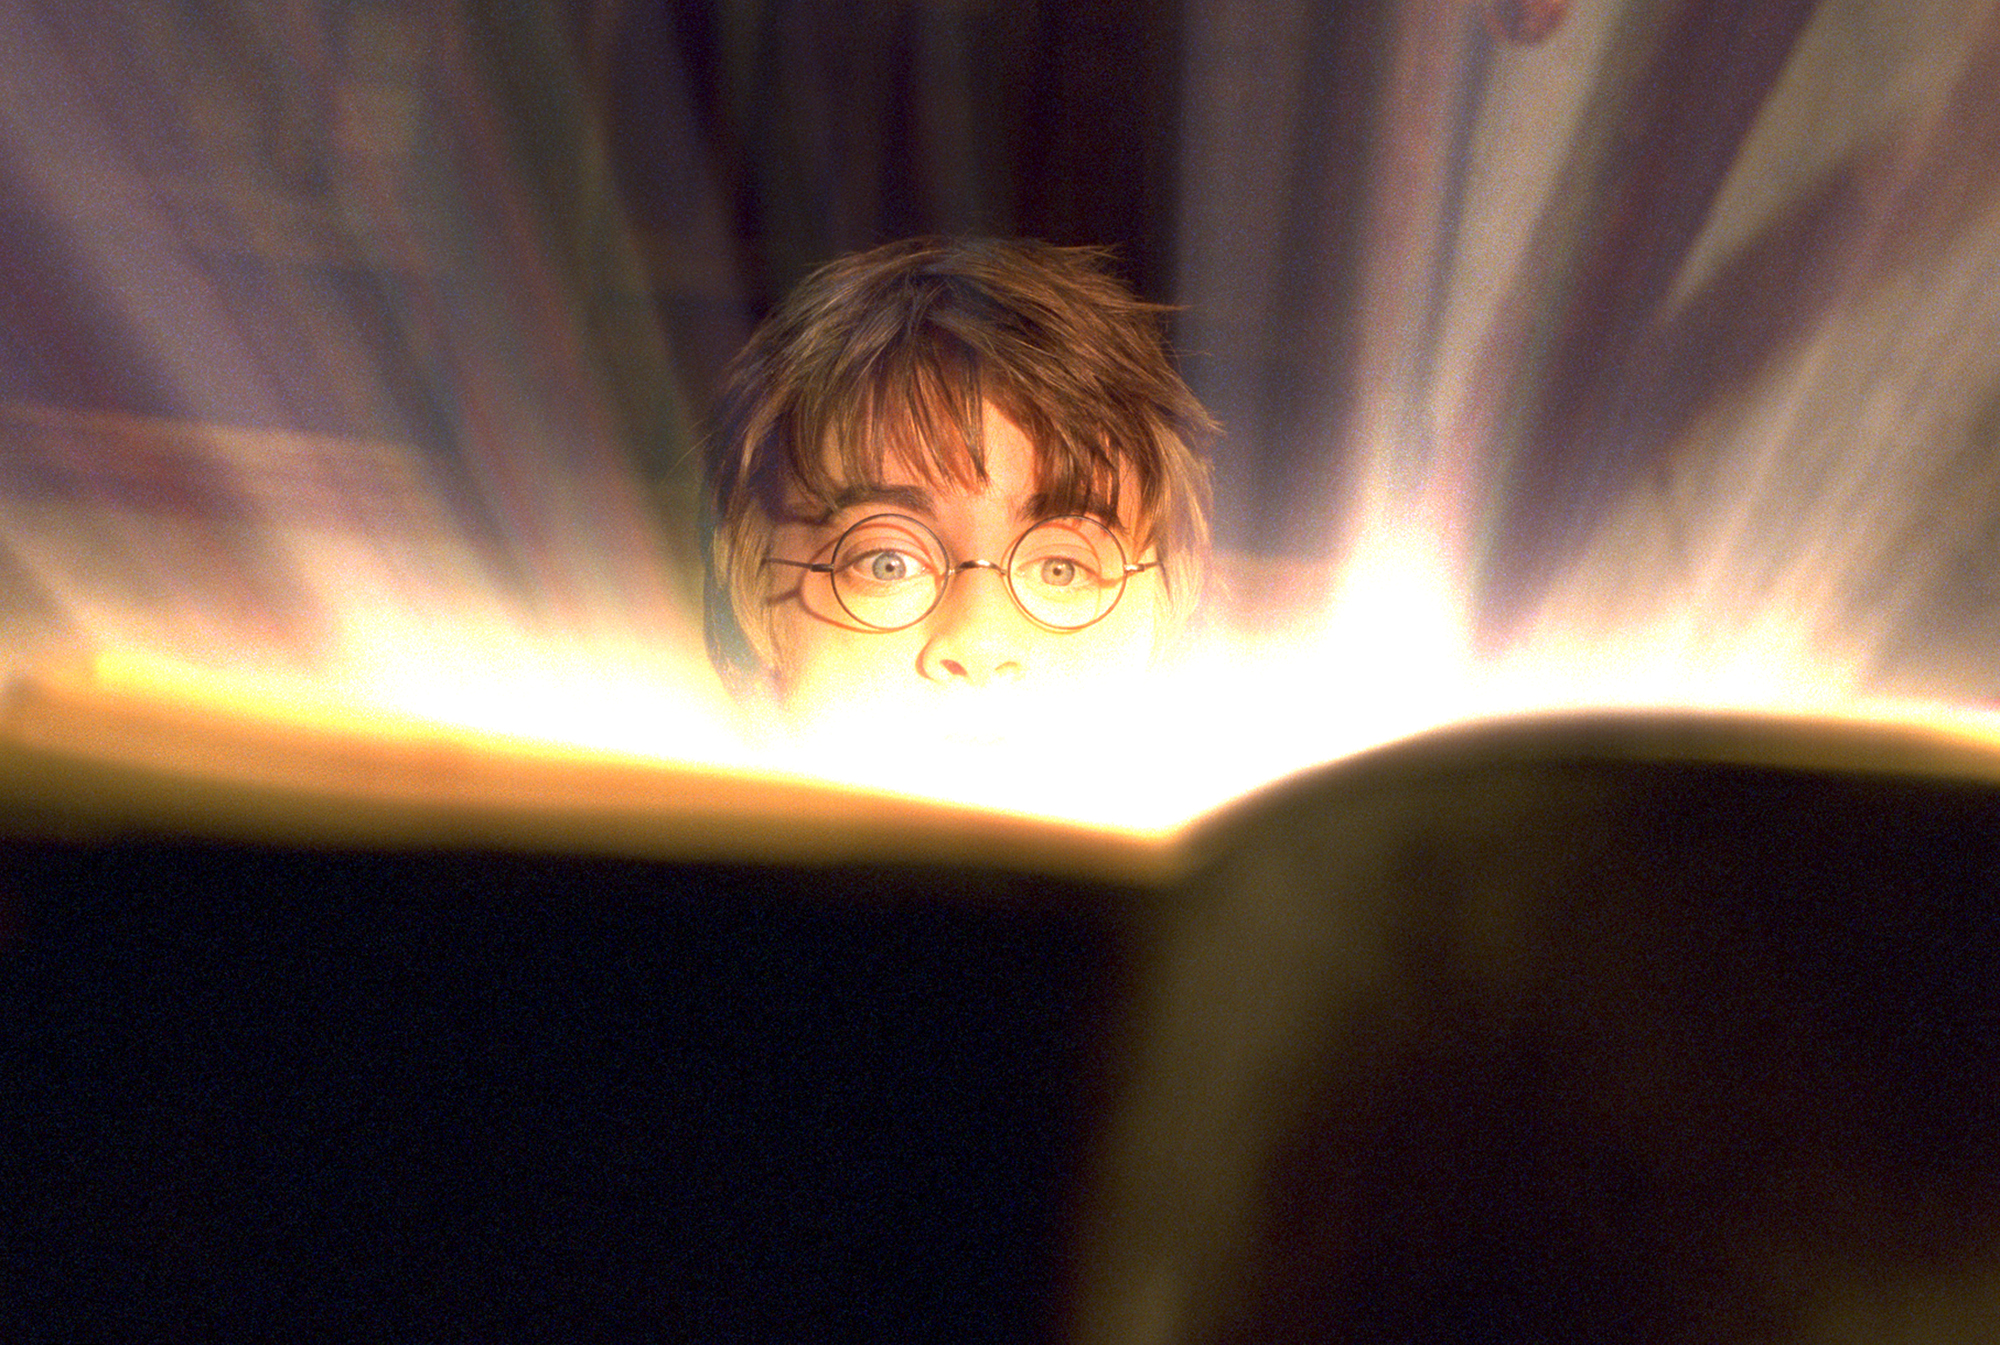 Harry Potter: Horcruxes Magnetiske Bogmærker